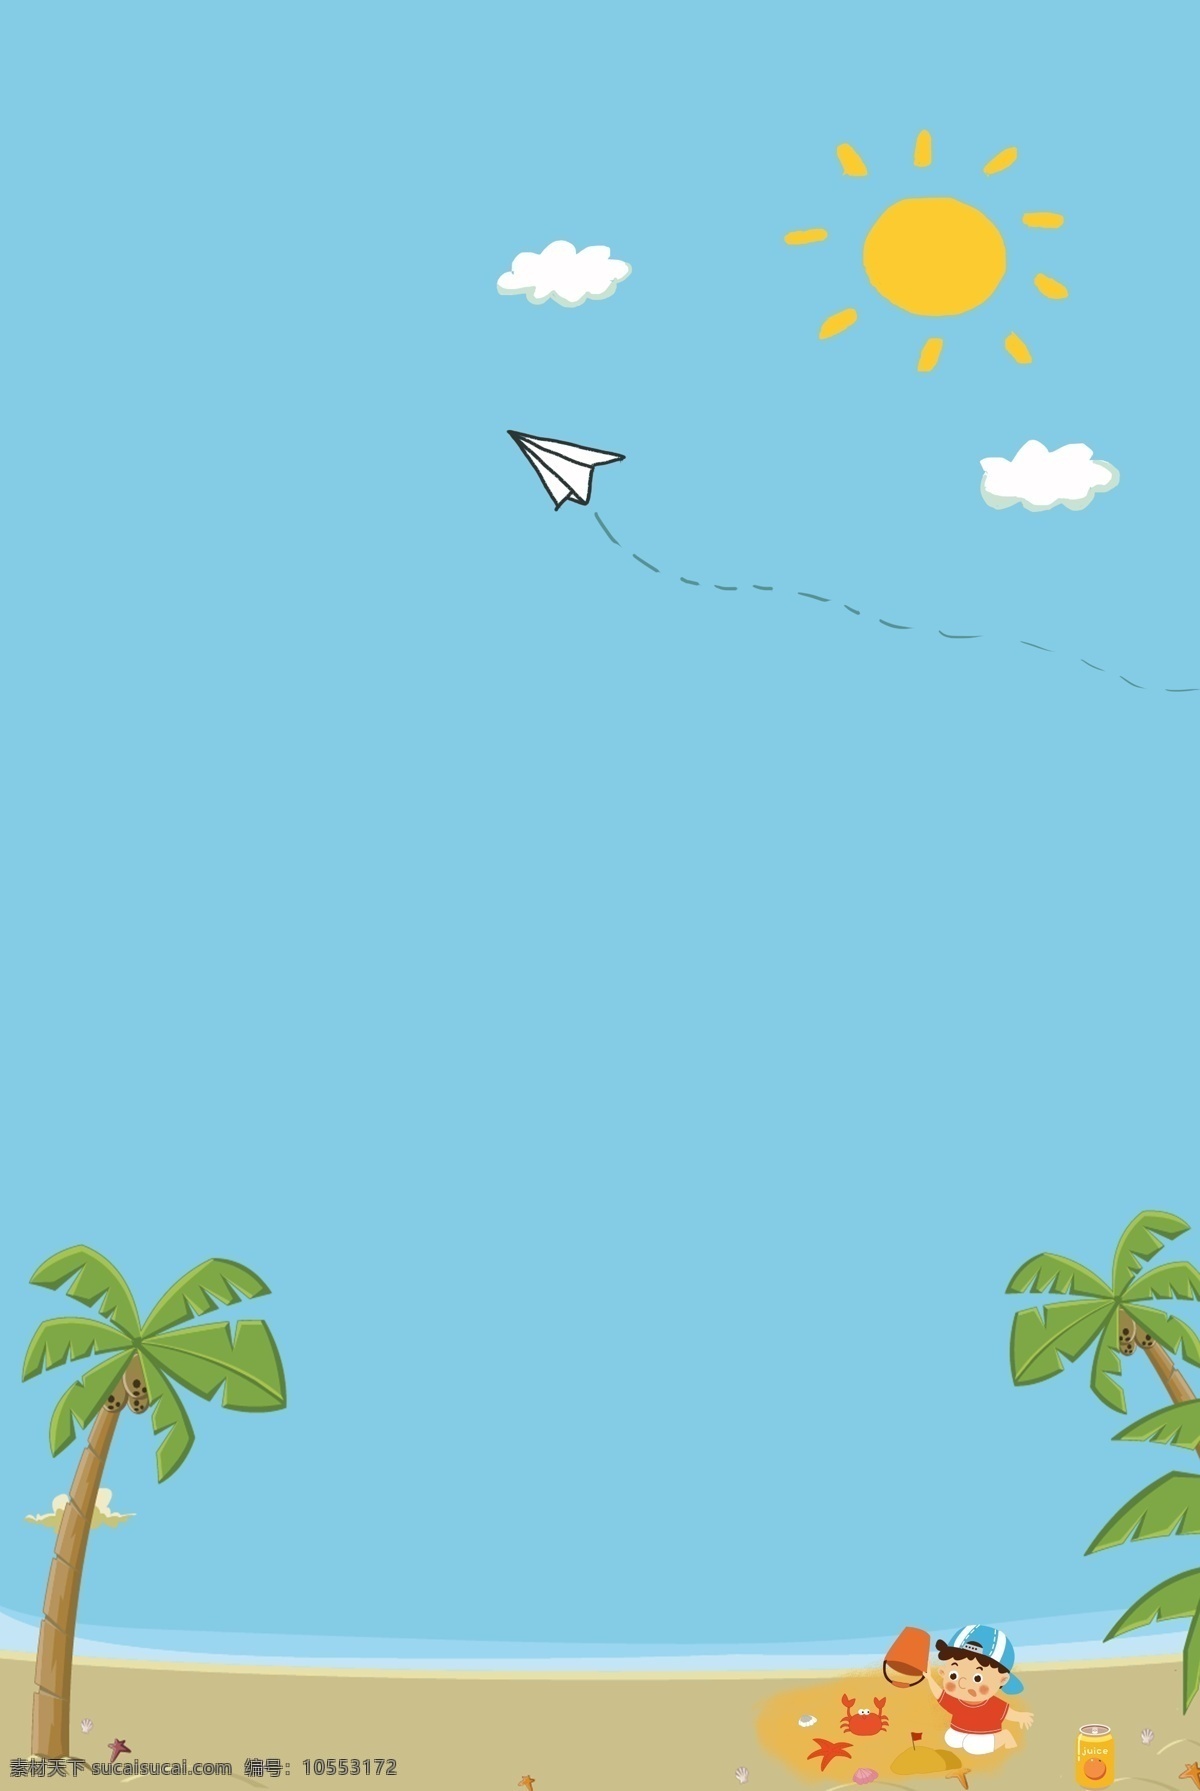 凉爽 夏日 清凉 海边 纸飞机 太阳 云朵 椰子树 男孩 螃蟹 饮料 卡通